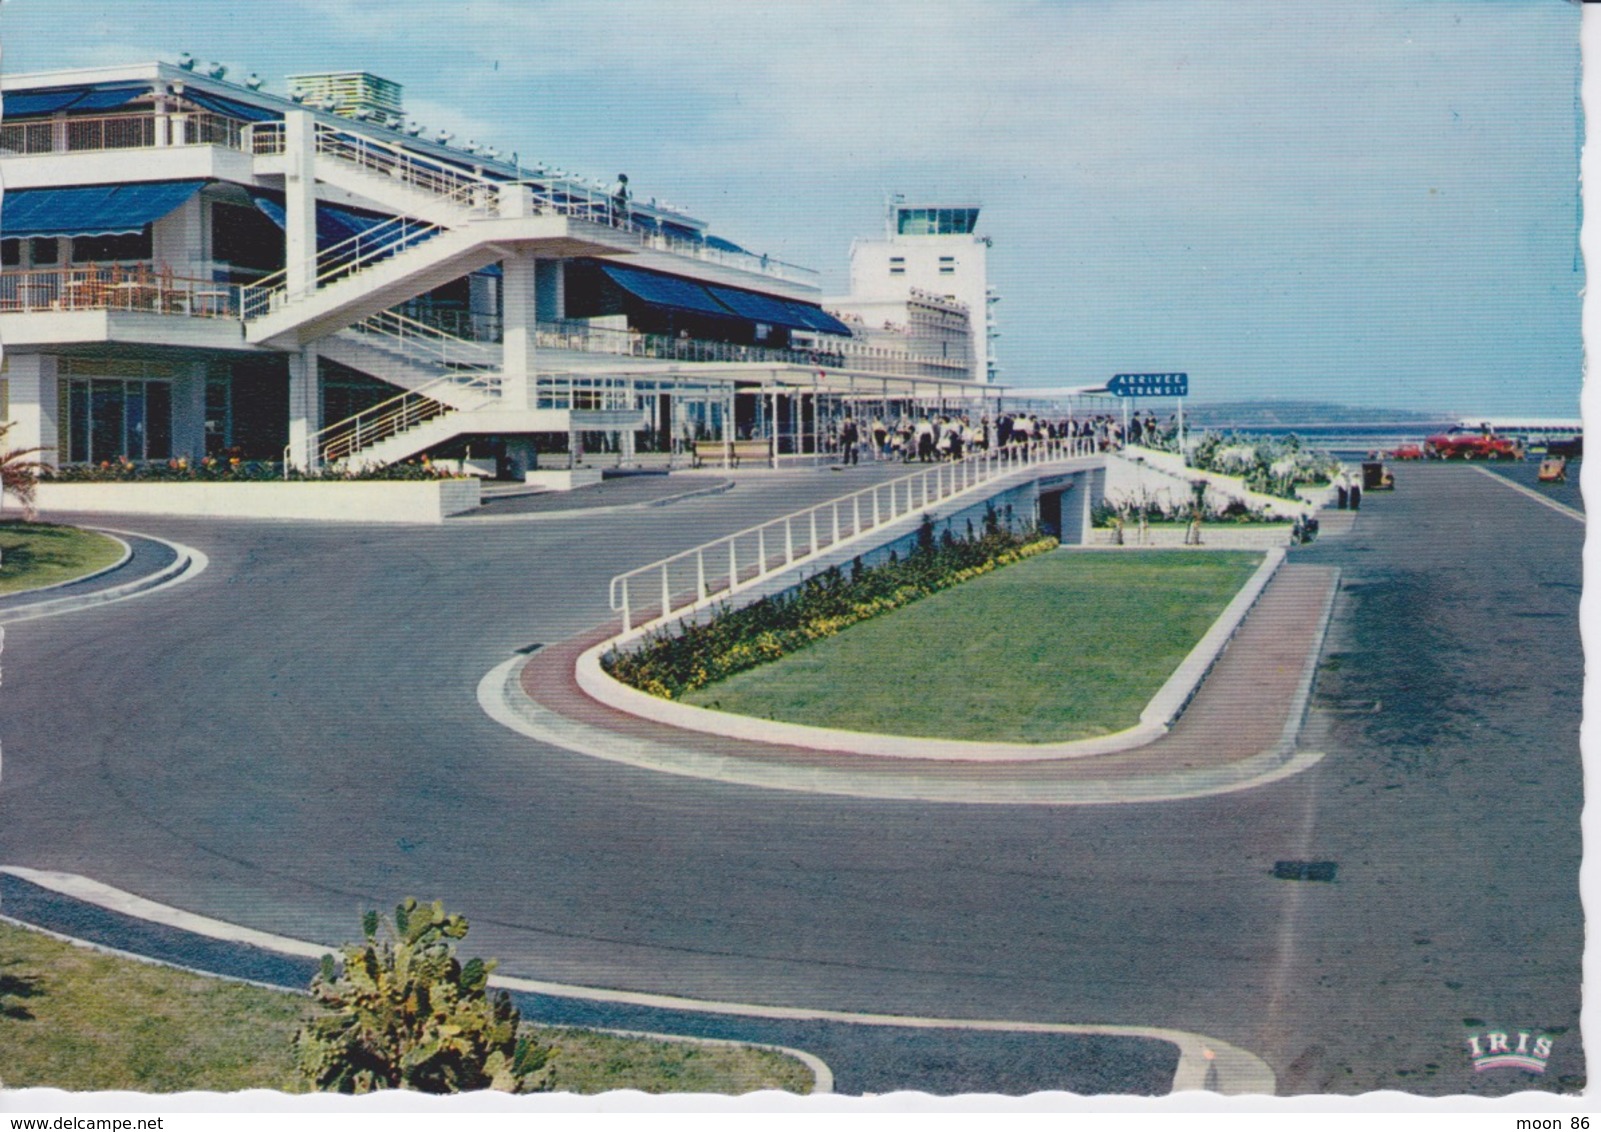 06 - NICE - AÉROPORT DE NICE COTE D'AZUR - Luftfahrt - Flughafen